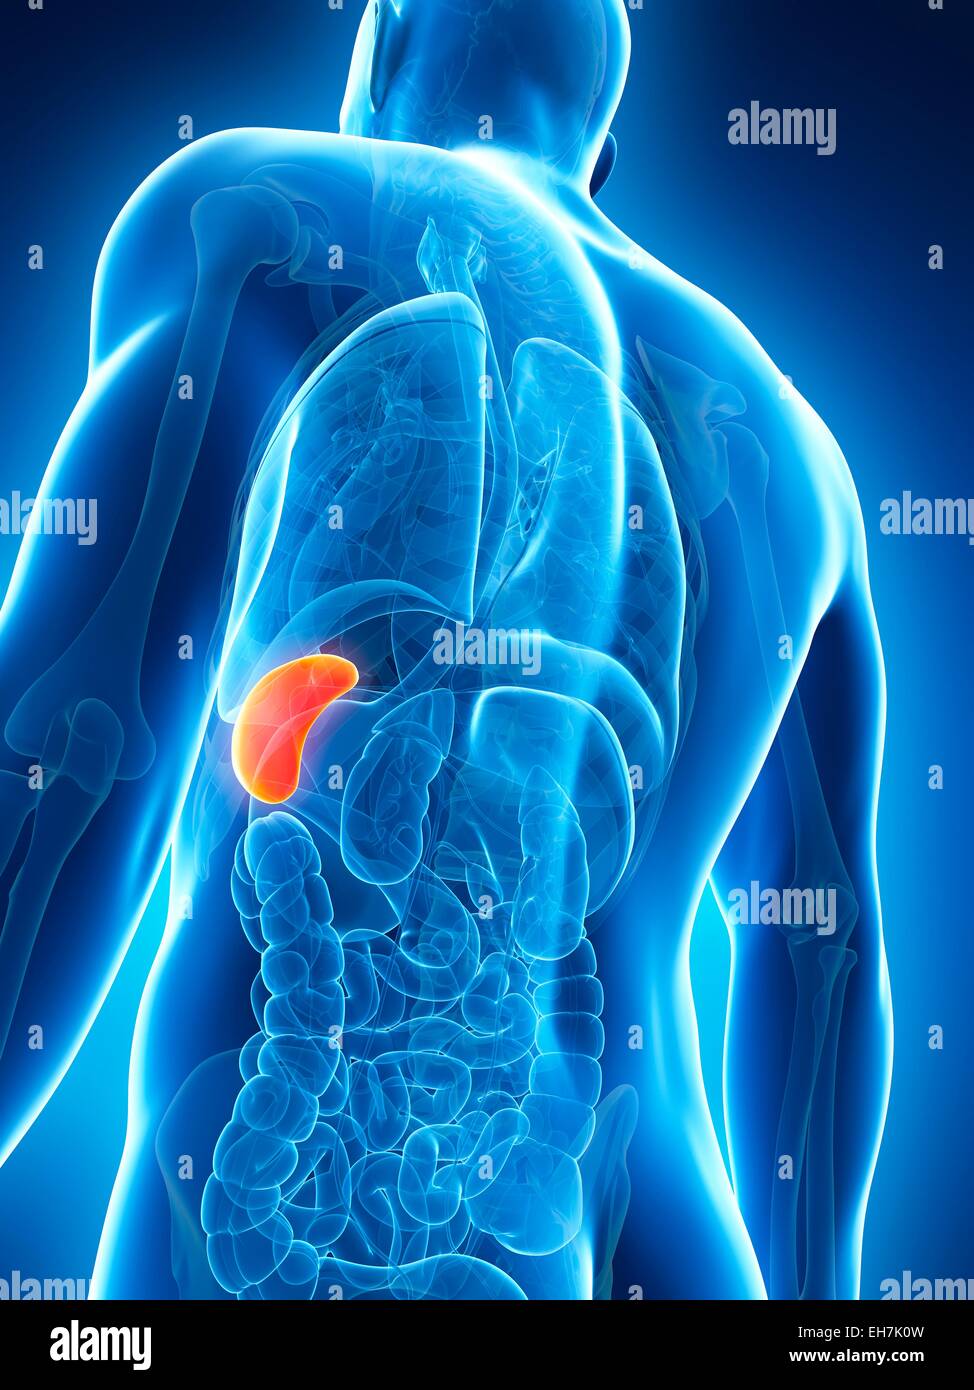 Human spleen, illustration Stock Photo - Alamy